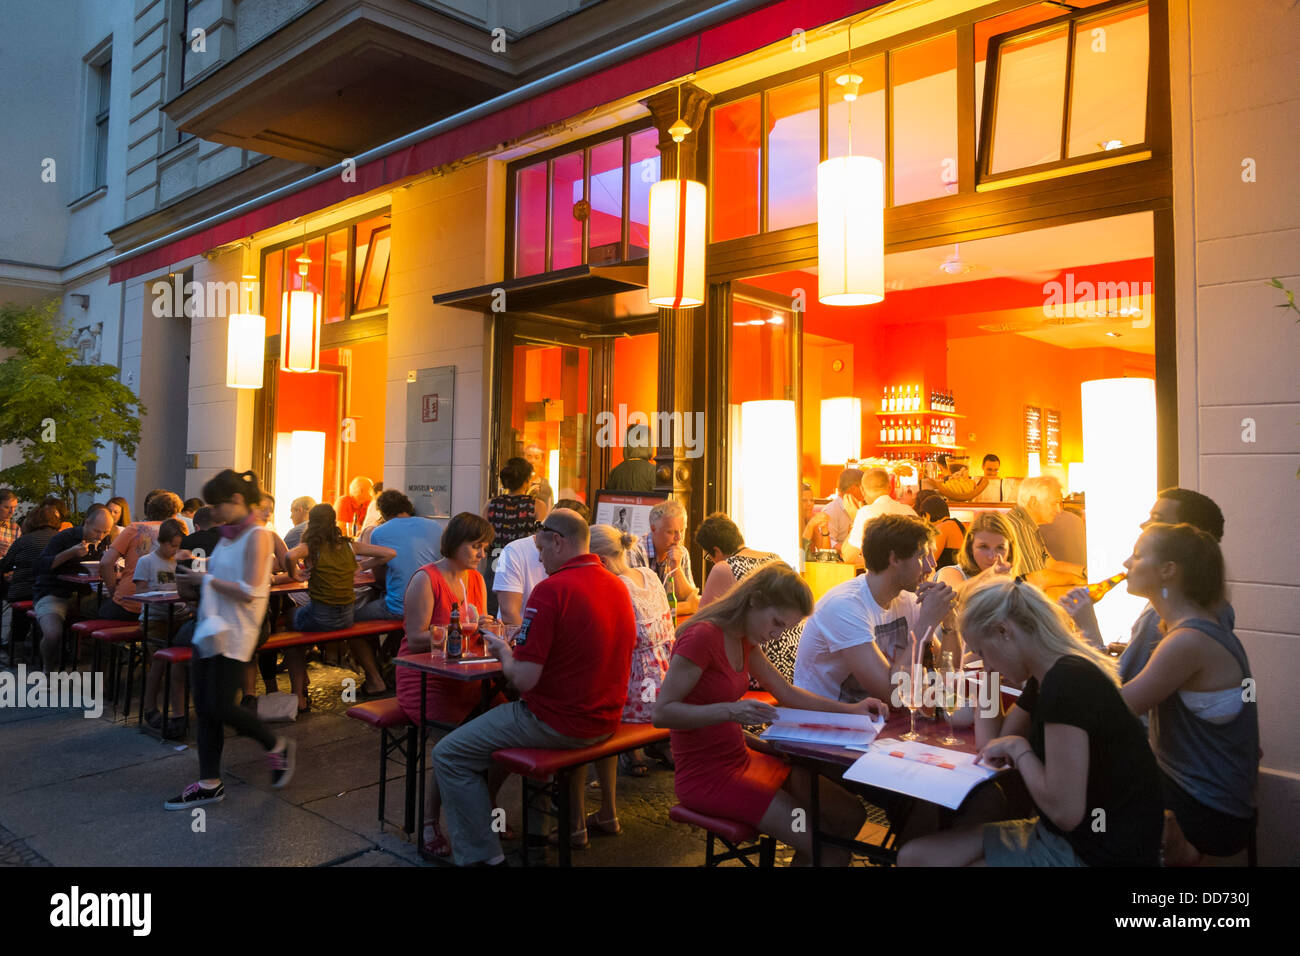 Occupé à vue de nuit populaires Monsieur Vuong restaurant vietnamien à Mitte Berlin Allemagne Banque D'Images